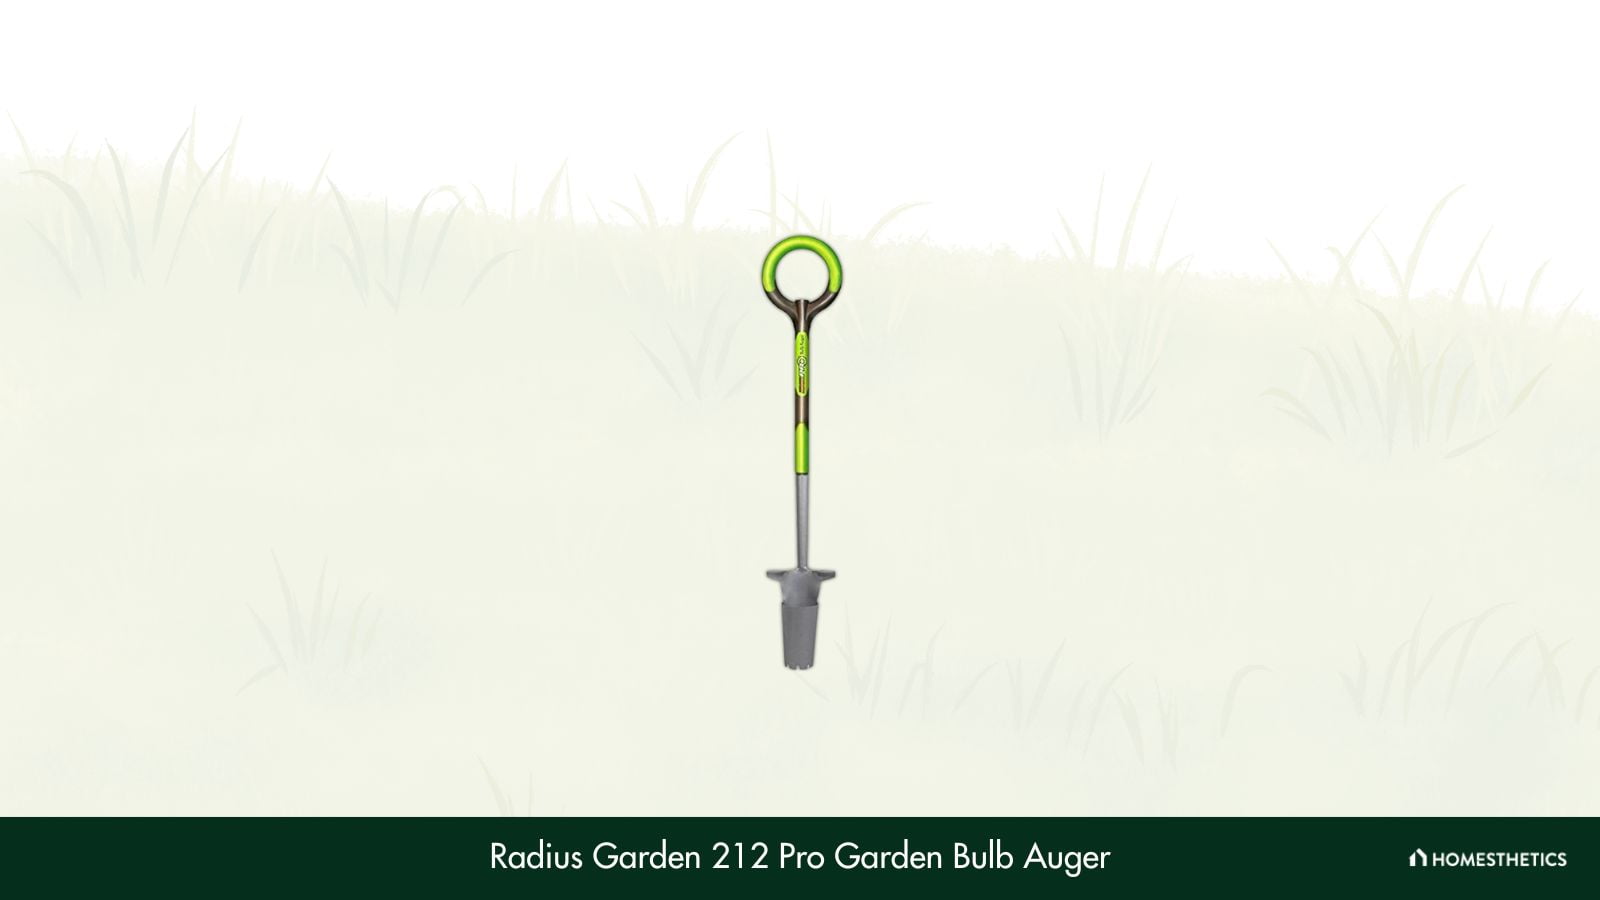 Radius Garden 212 Pro Garden Bulb Auger